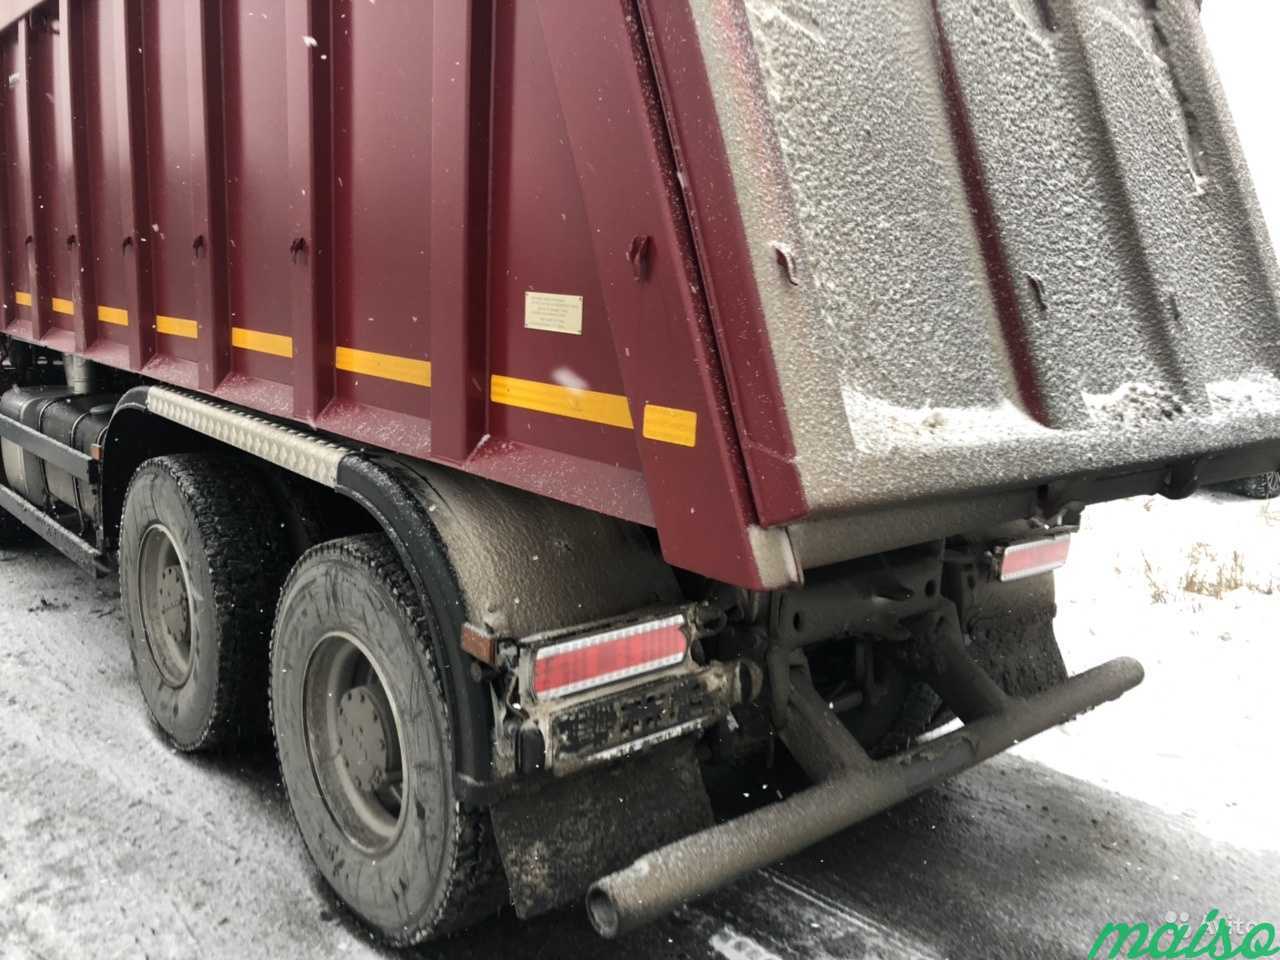 Аренда грузового авто грузовой технике самосвала в Санкт-Петербурге. Фото 4